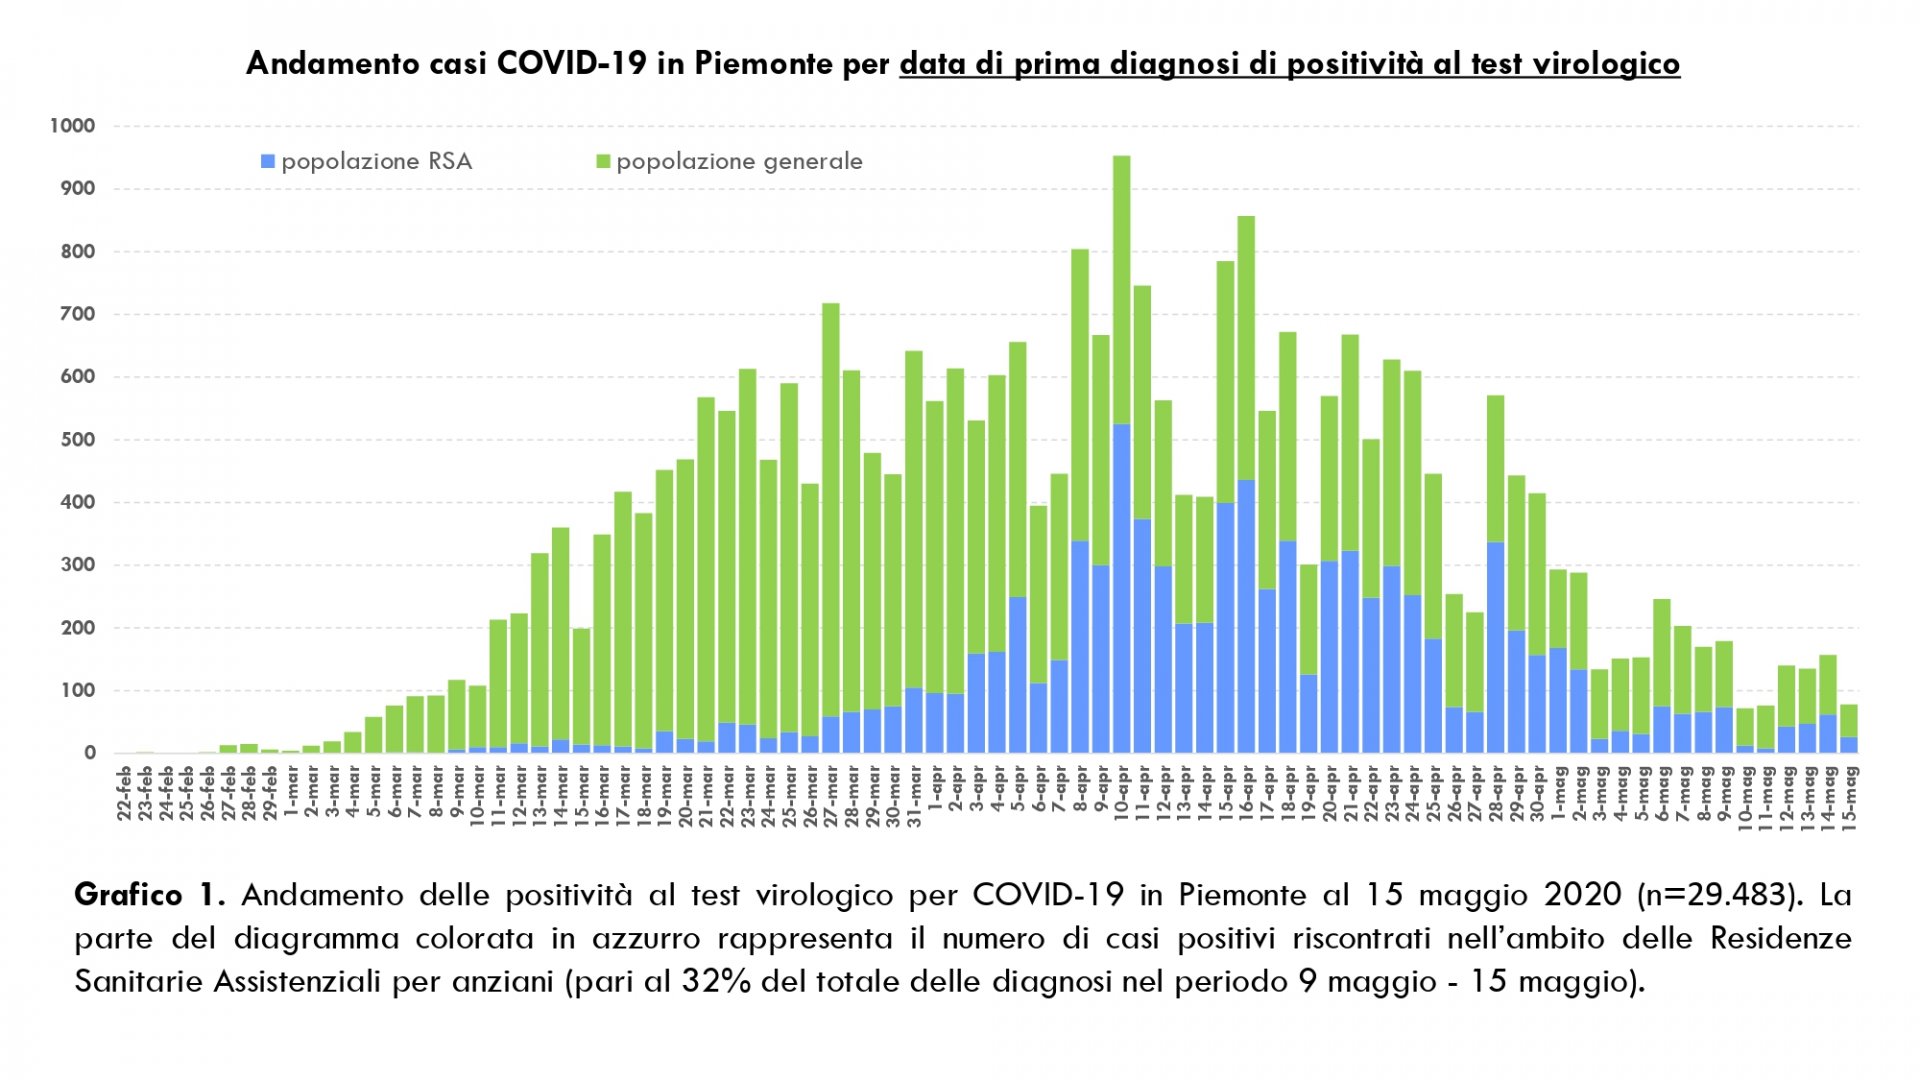 Dati COVID-19 Piemonte 16 maggio_pages-to-jpg-0003